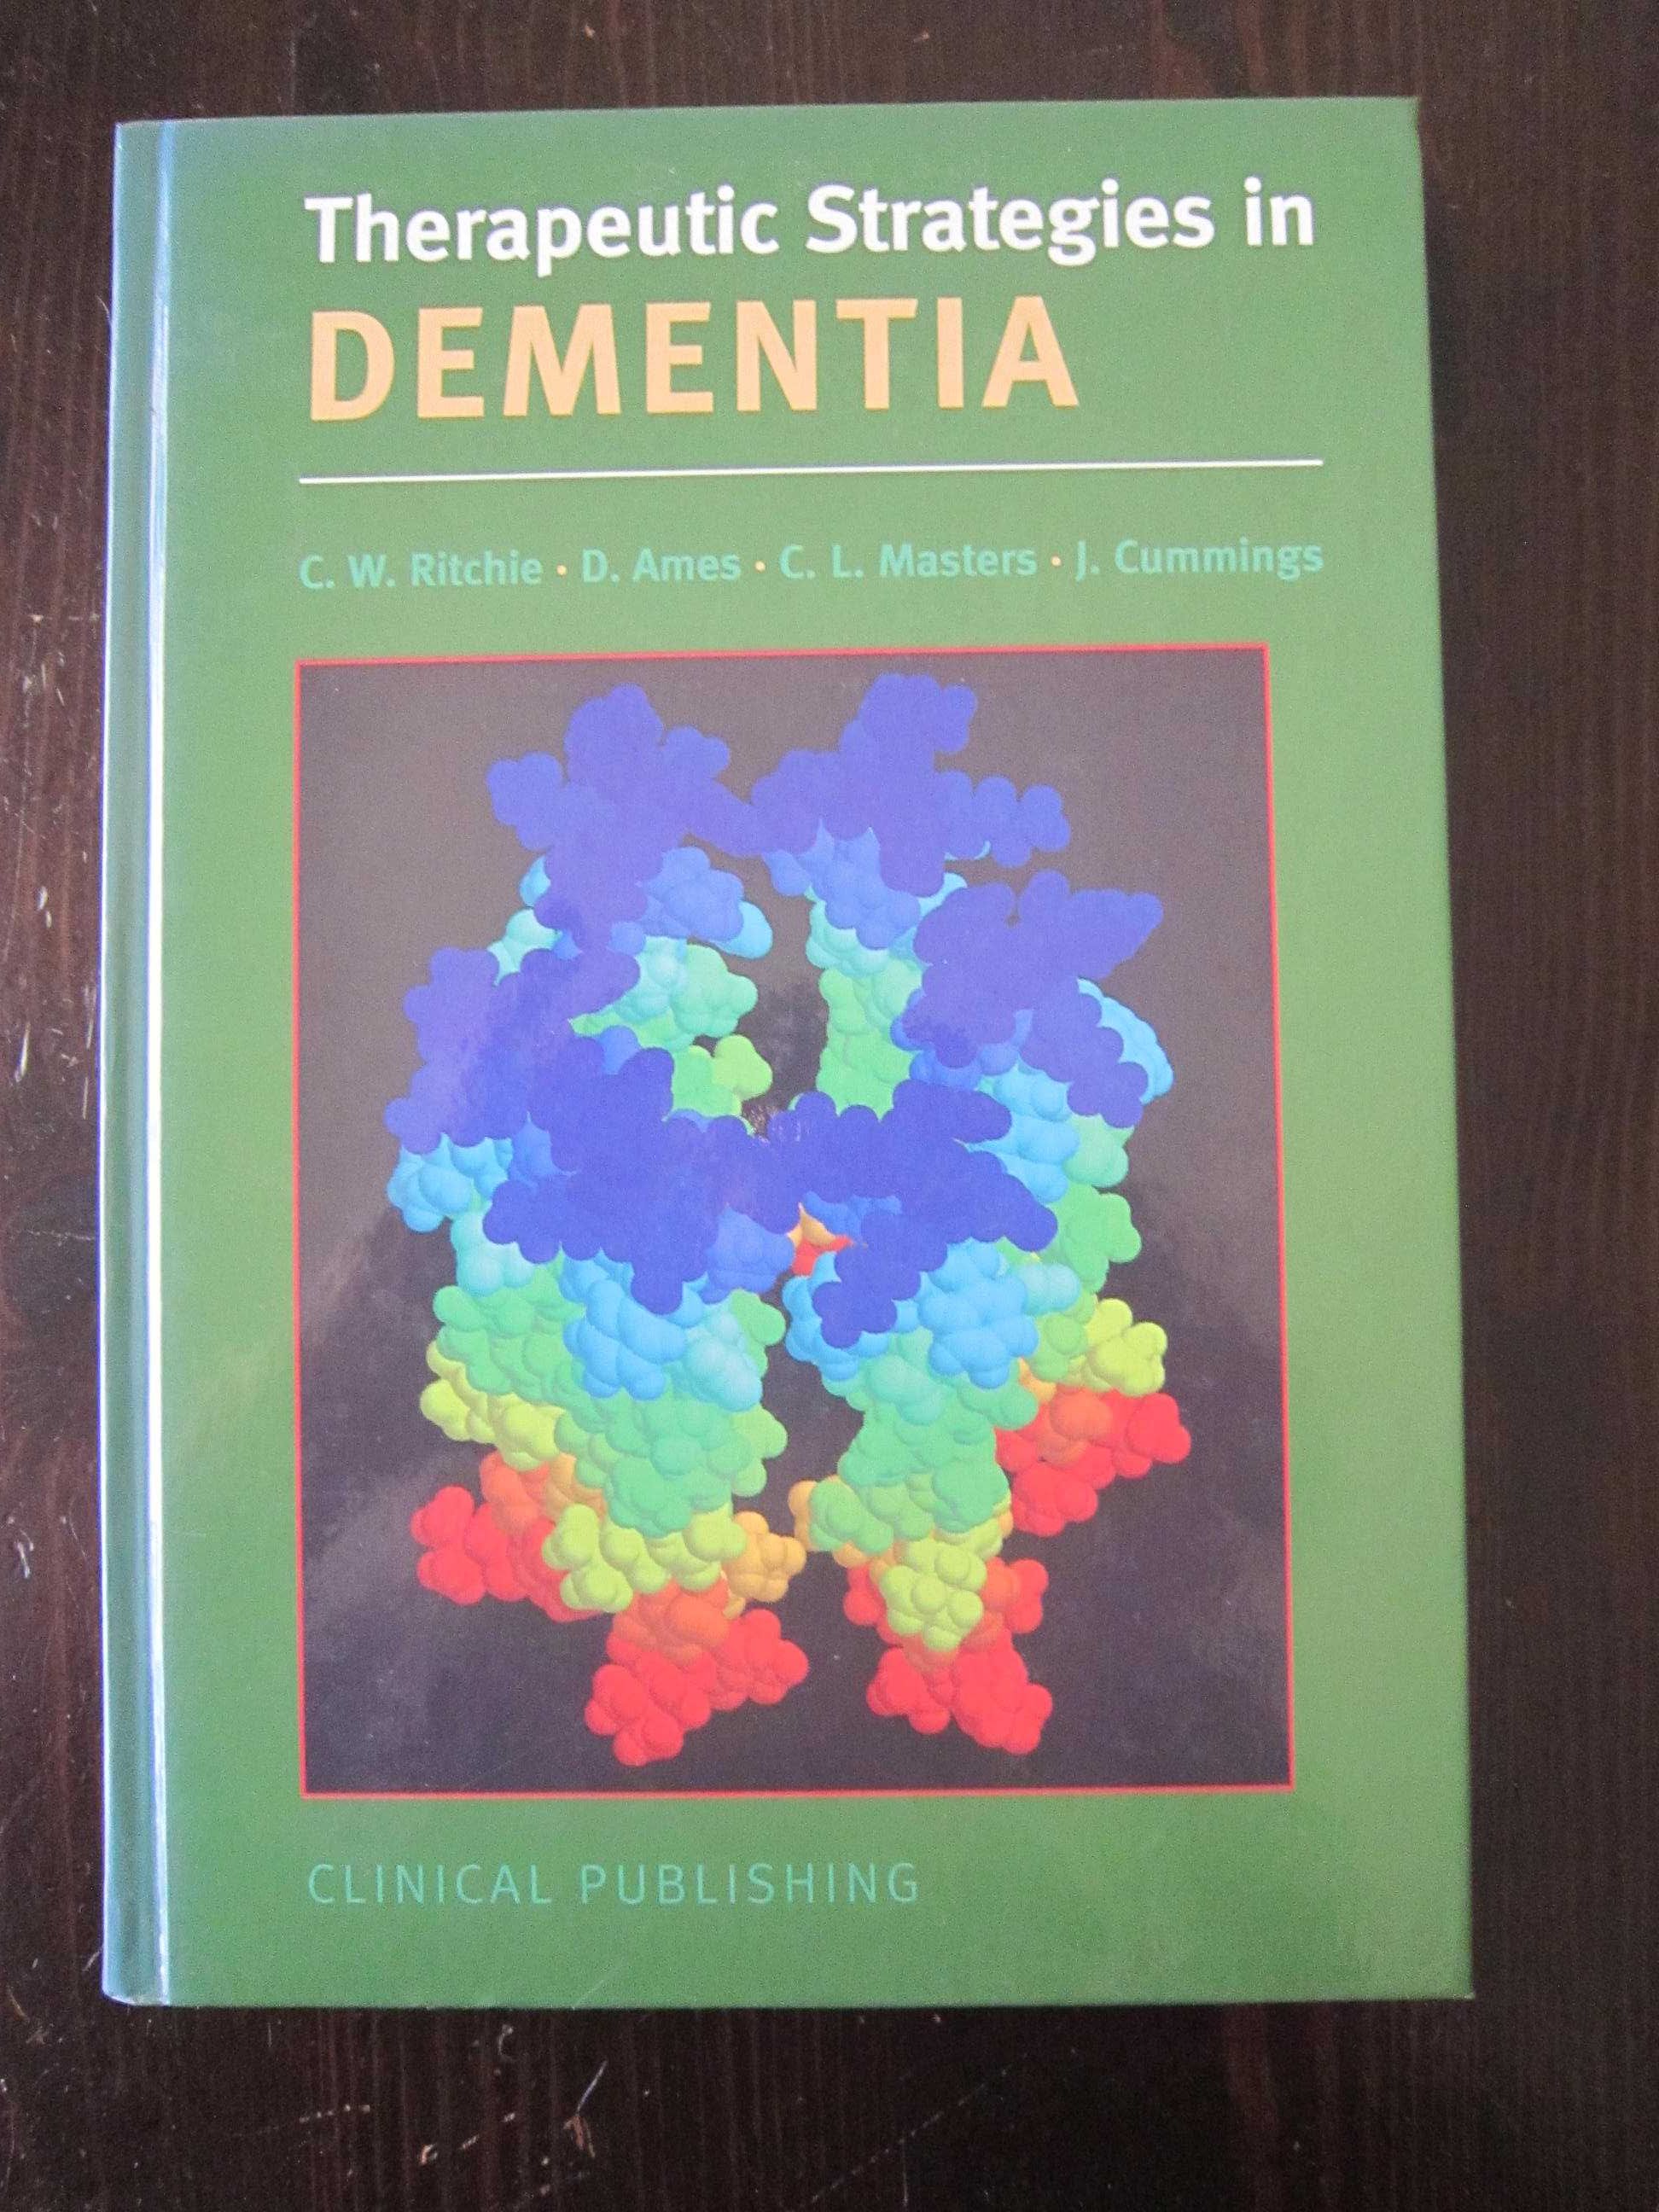 Livro "Therapeutic Strategies in Dementia"